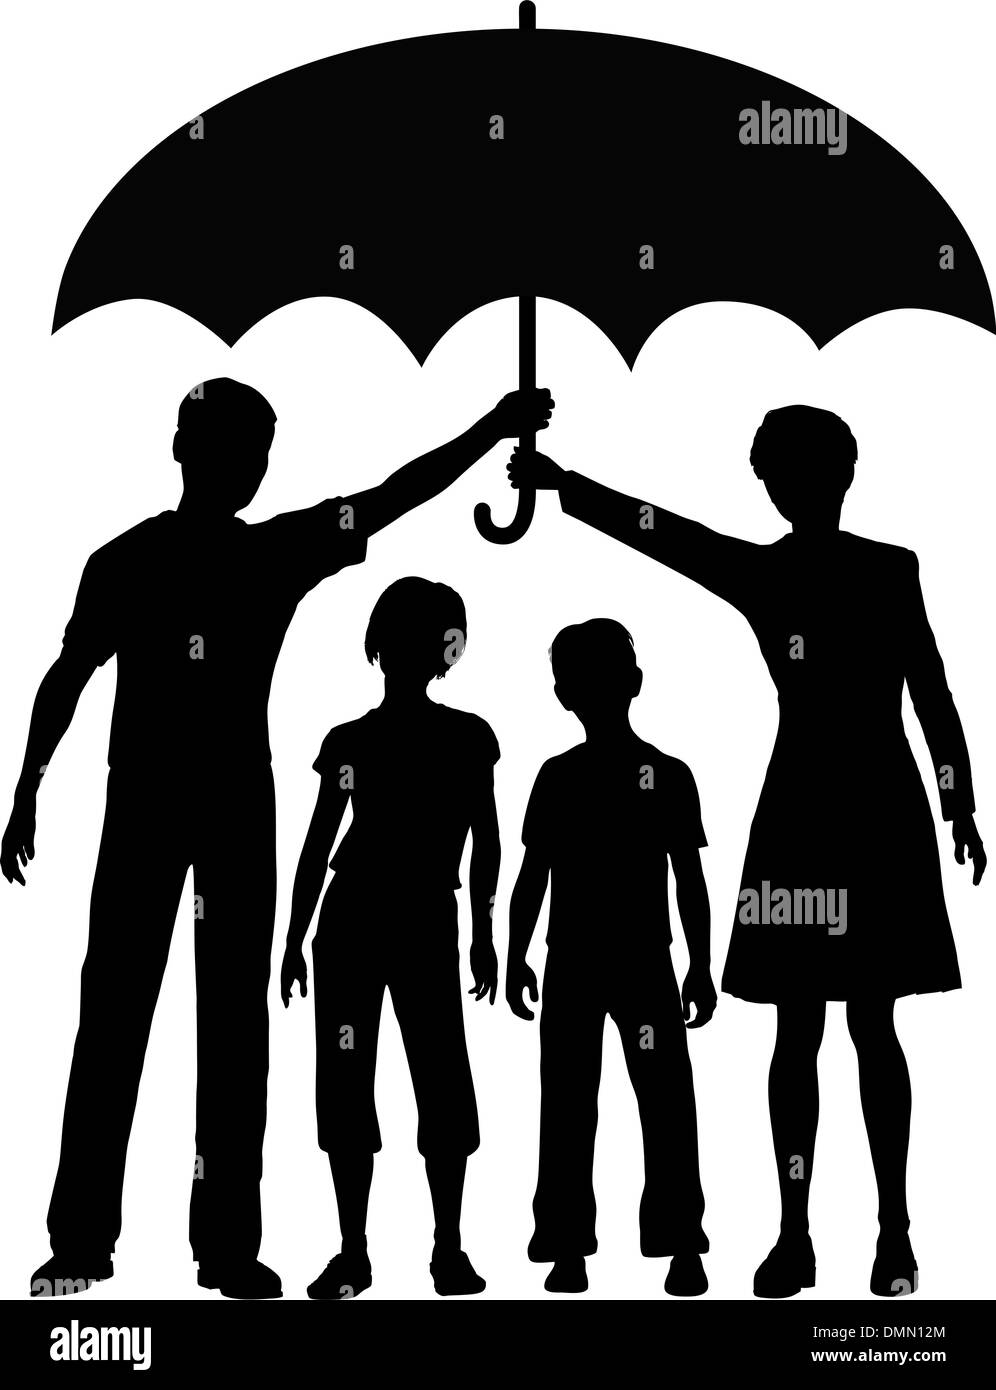 Les parents de la famille détenant une police d'assurance risque de sécurité umbrella Illustration de Vecteur